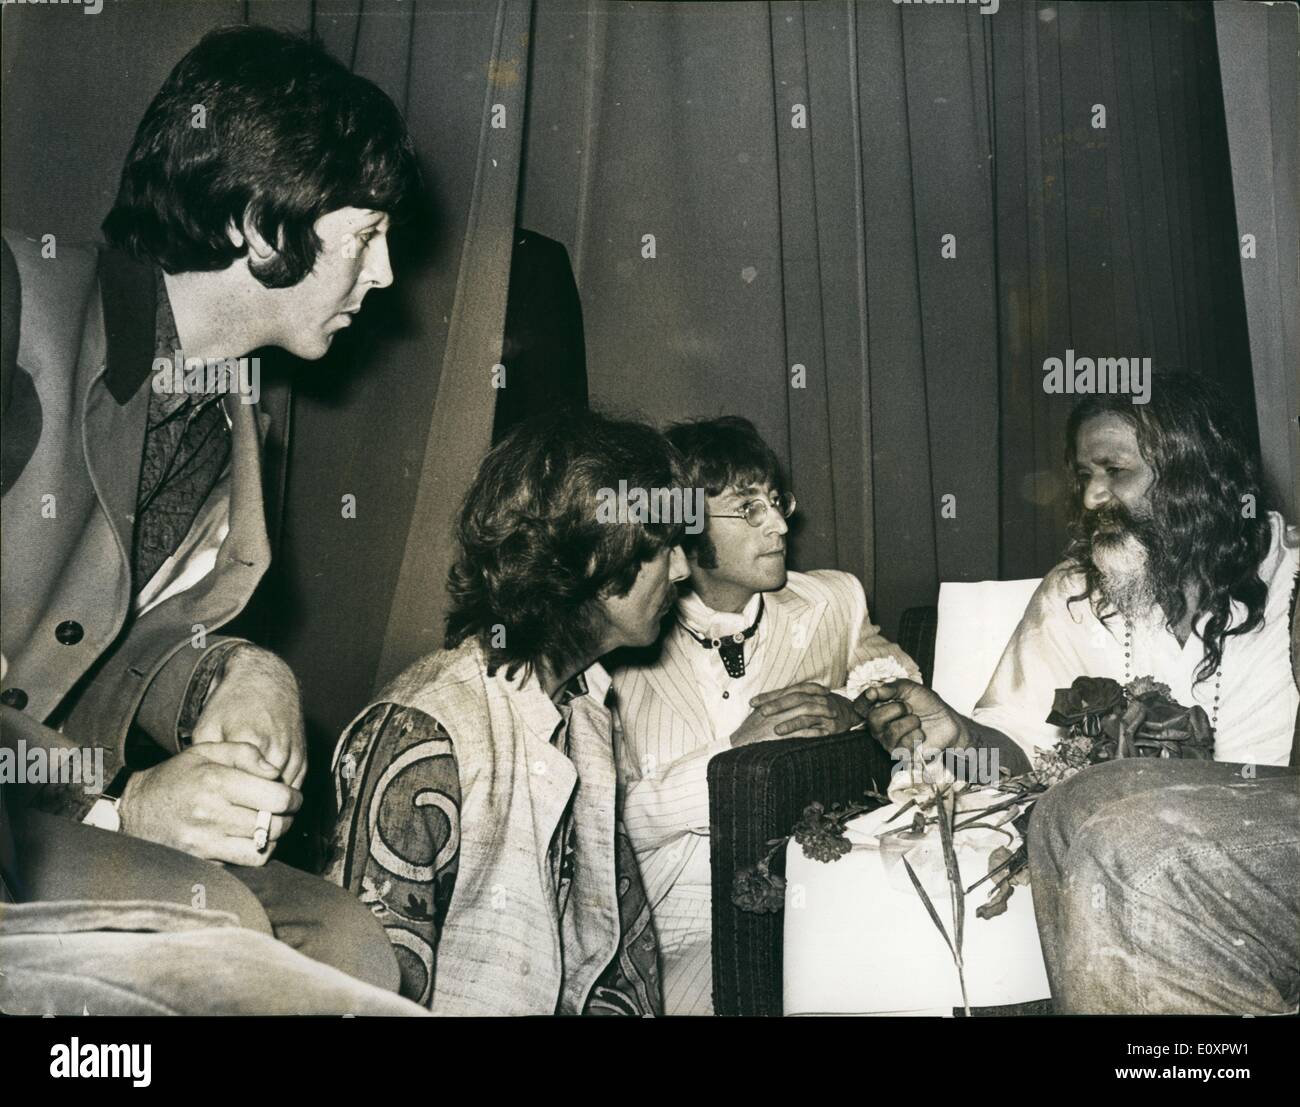 8. August 1967 - drei von den Beatles besuchen Vortrag von Maharishi Mahesh Yogi: Maharishi Mahesh Yogi, der in London für ein Abschied auf seine achte und letzte Welttournee, danach geht er in den Ruhestand aus dem öffentlichen Leben, besuchen Sie letzte Nacht auf die wichtige Rolle der transzendentalen Meditation im modernen Leben, bei einem öffentlichen Vortrag im Hilton Hotel in London sprach ist. Unter den waren drei von den Beatles, John Lennon, Paul McCartney und George Harrison auf ihn zu hören Stockfoto